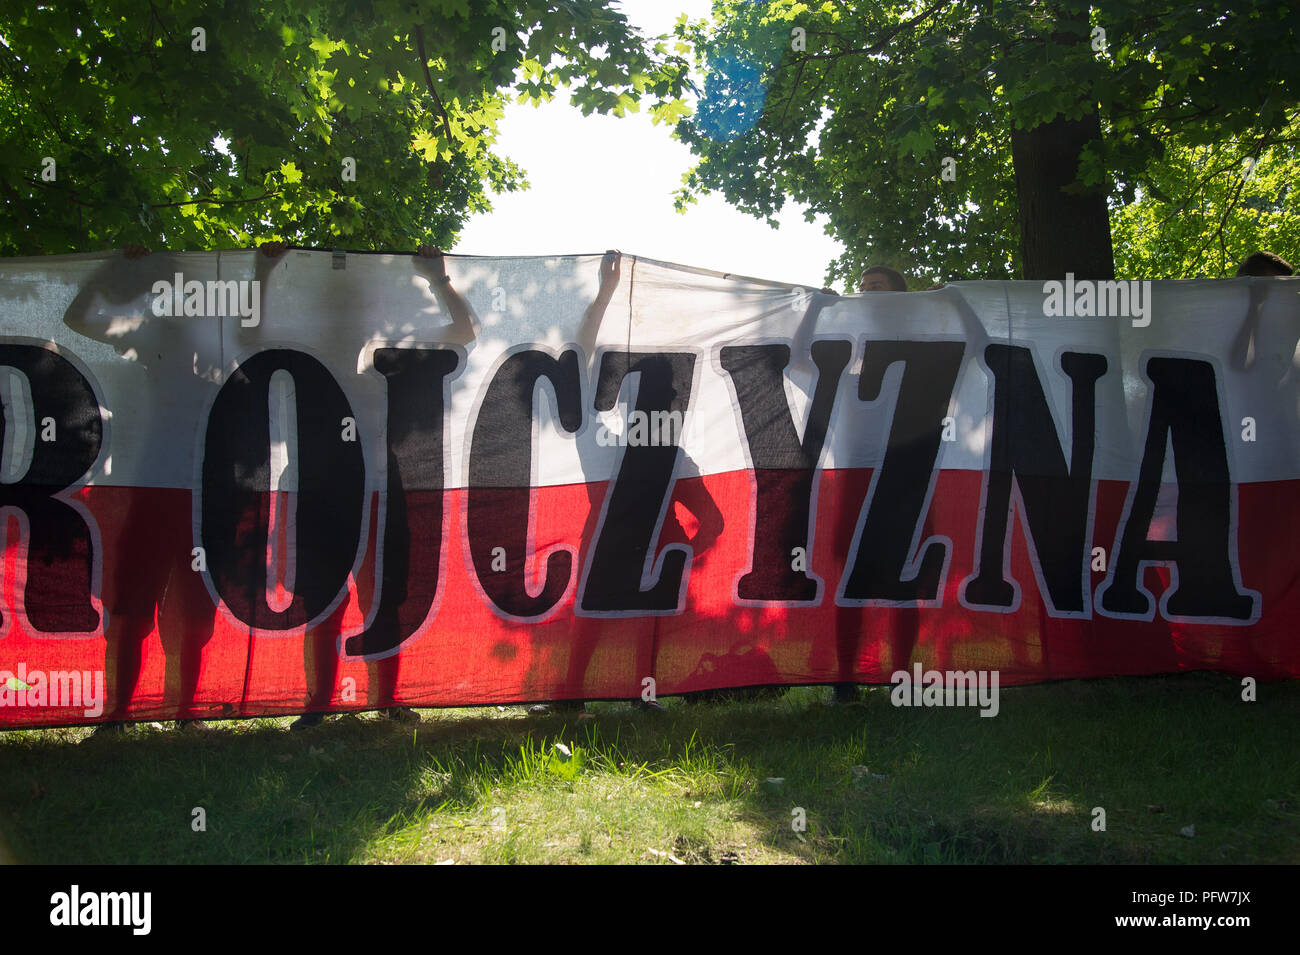 Polnische nationale Flagge mit Vorzeichen Ojczyzna (Vaterland) in Danzig, Polen. August 2018 © wojciech Strozyk/Alamy Stock Foto Stockfoto